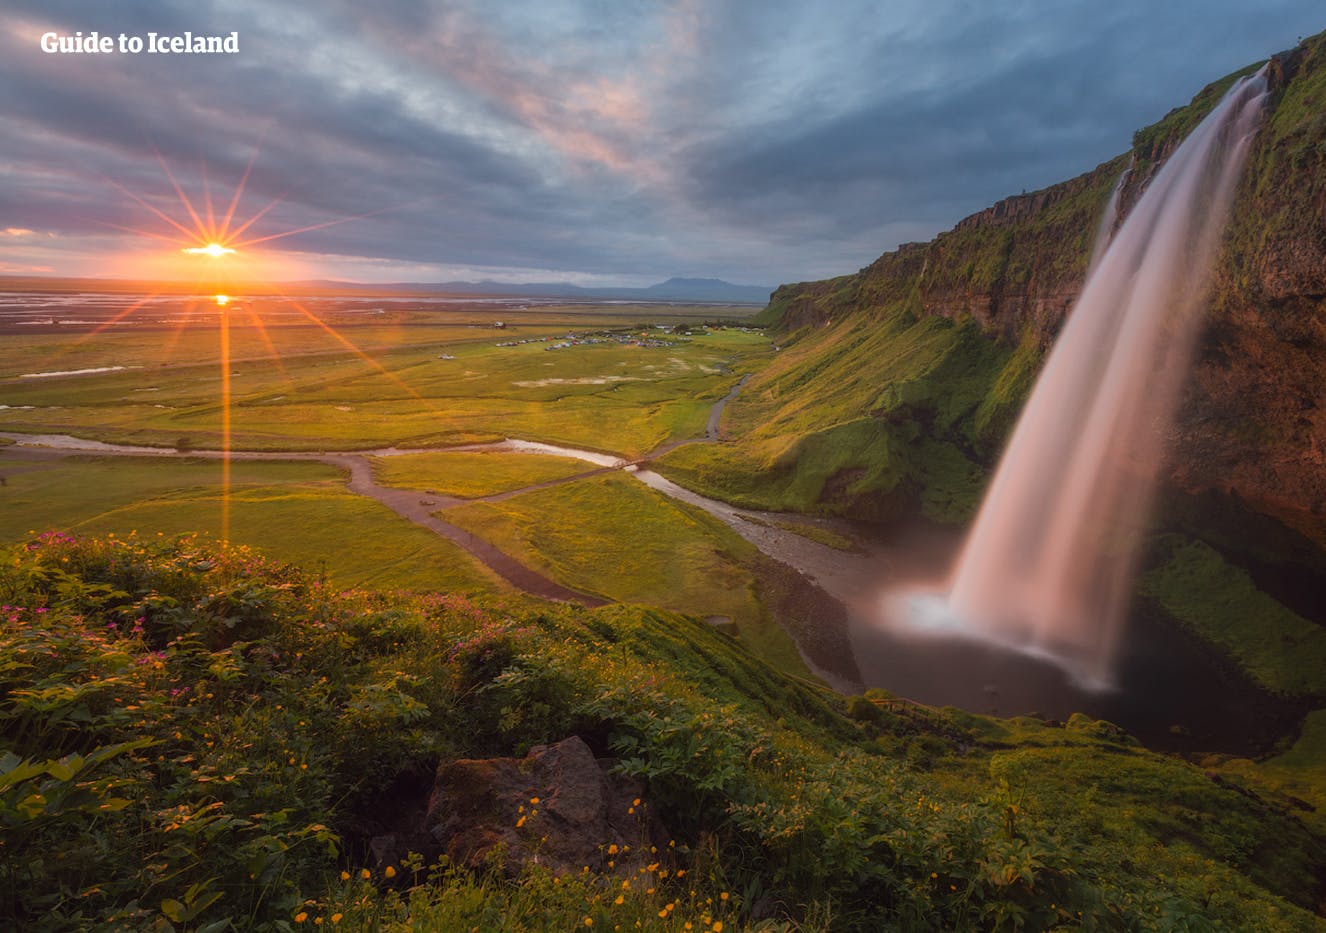 La cascada mágica de la cascada Seljalandsfoss bañada por la luz del sol en una puesta de verano.